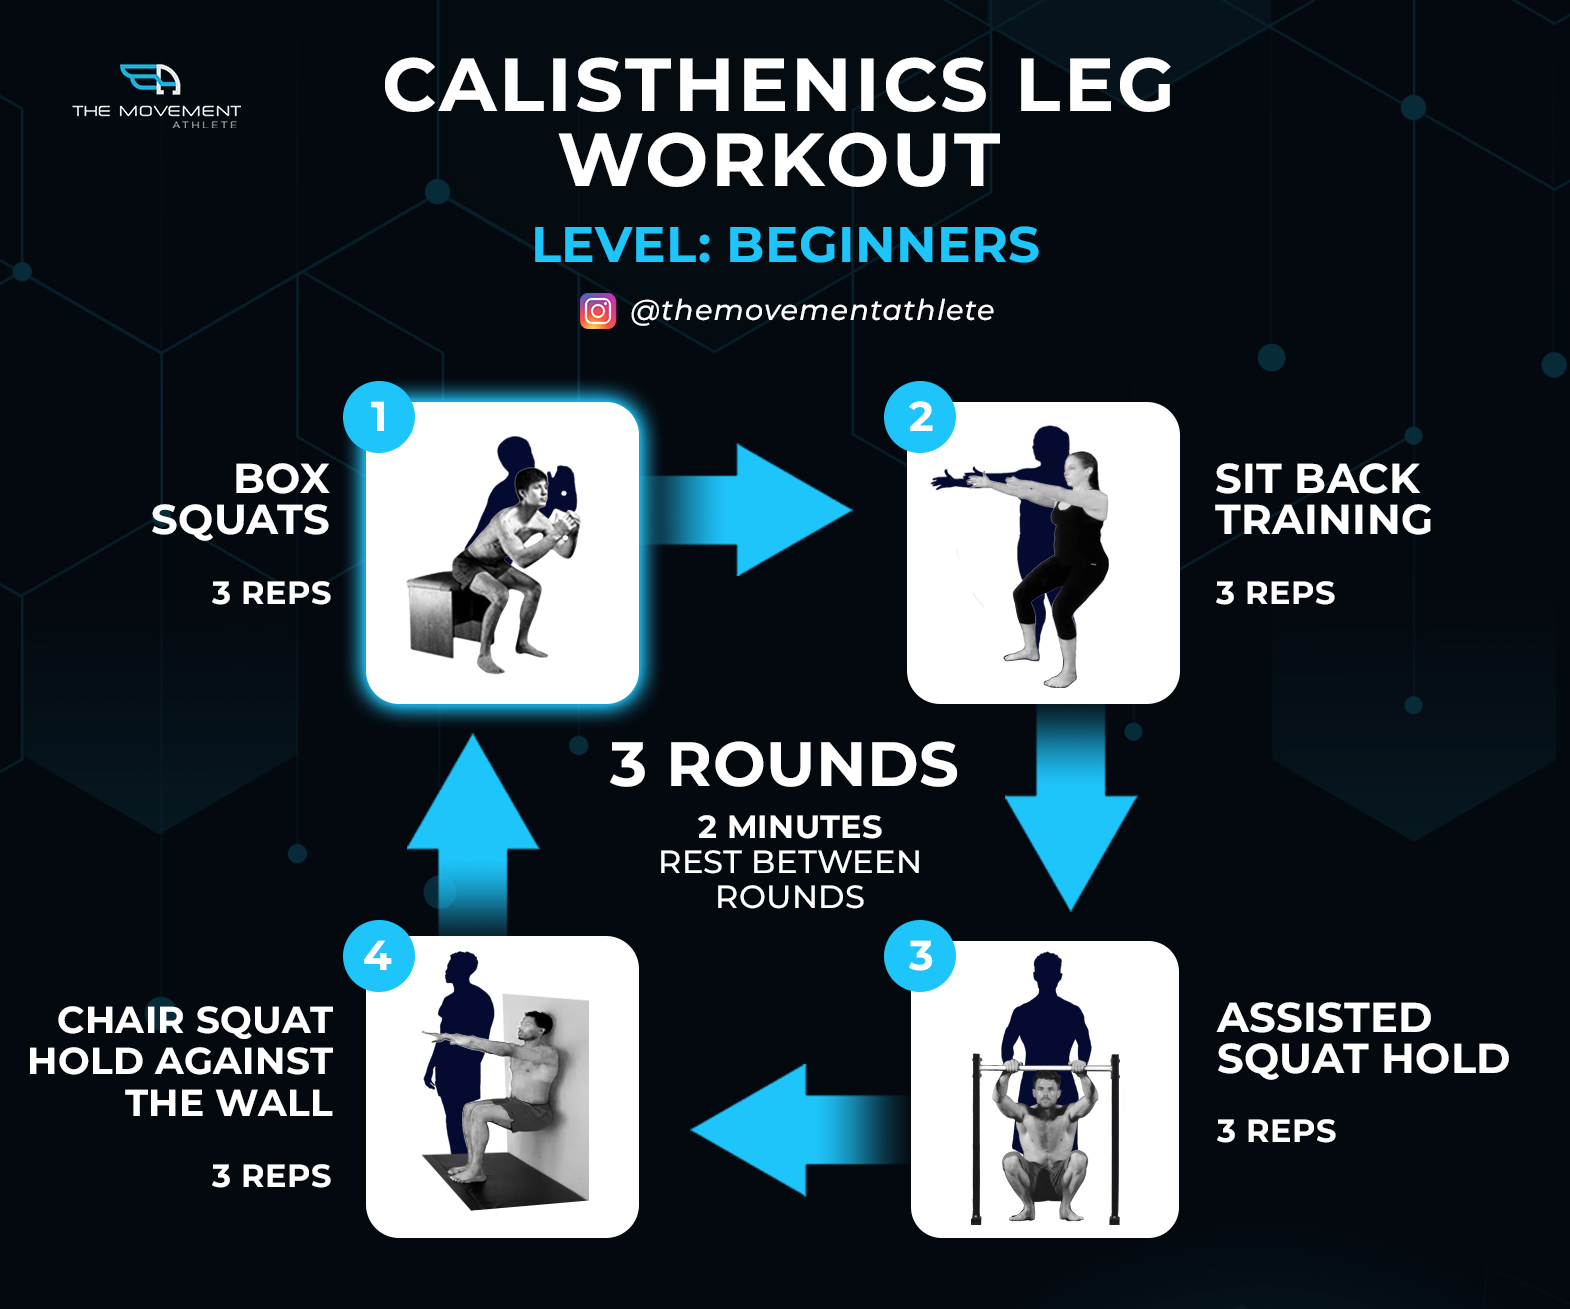 Calisthenics Leg Workout for Beginners